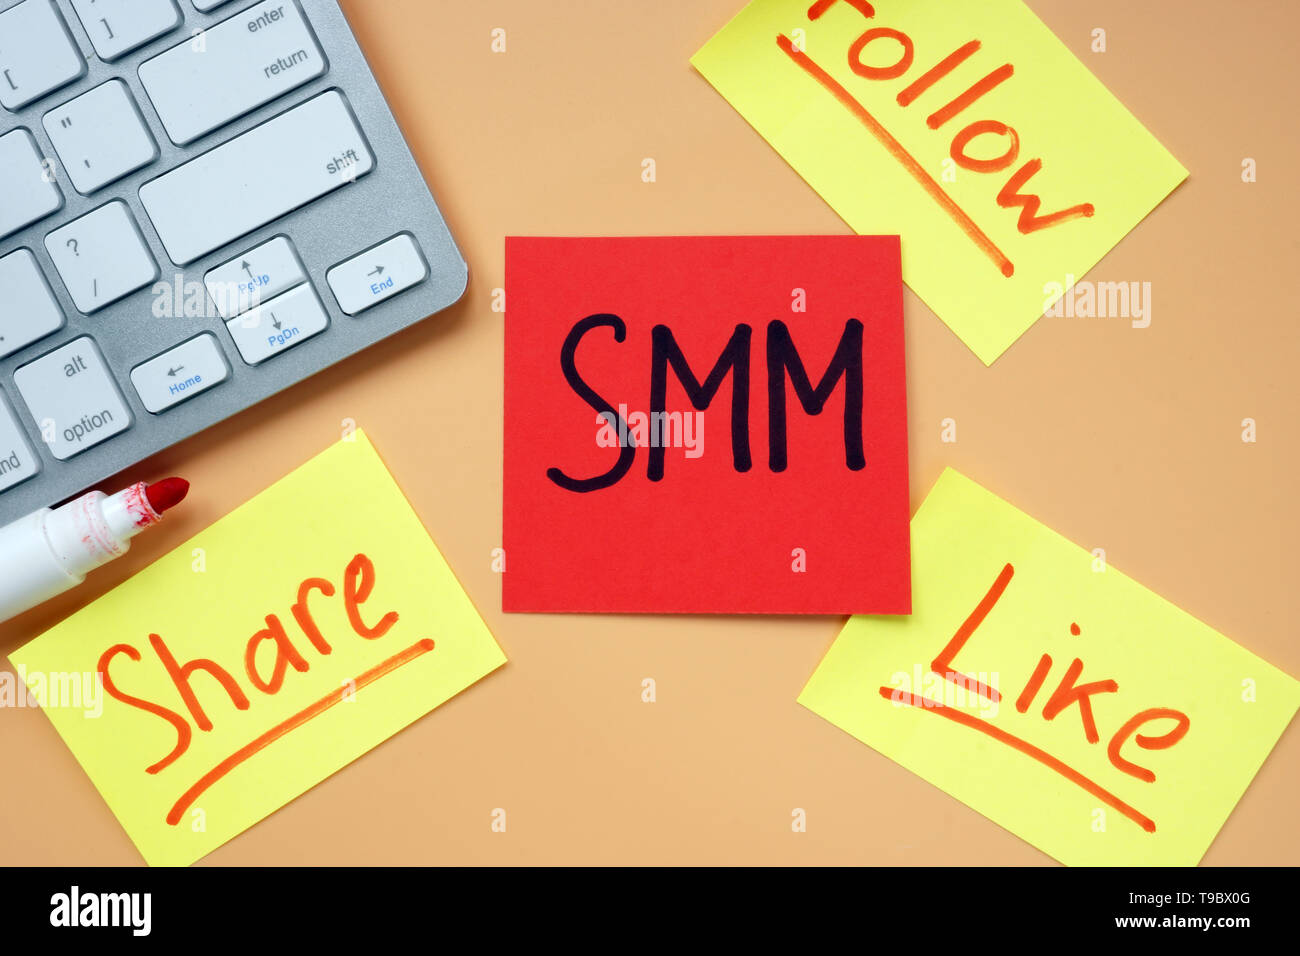 Cartes avec SMM - Social Media Marketing, partager, suivre et comme sur un bureau. Banque D'Images